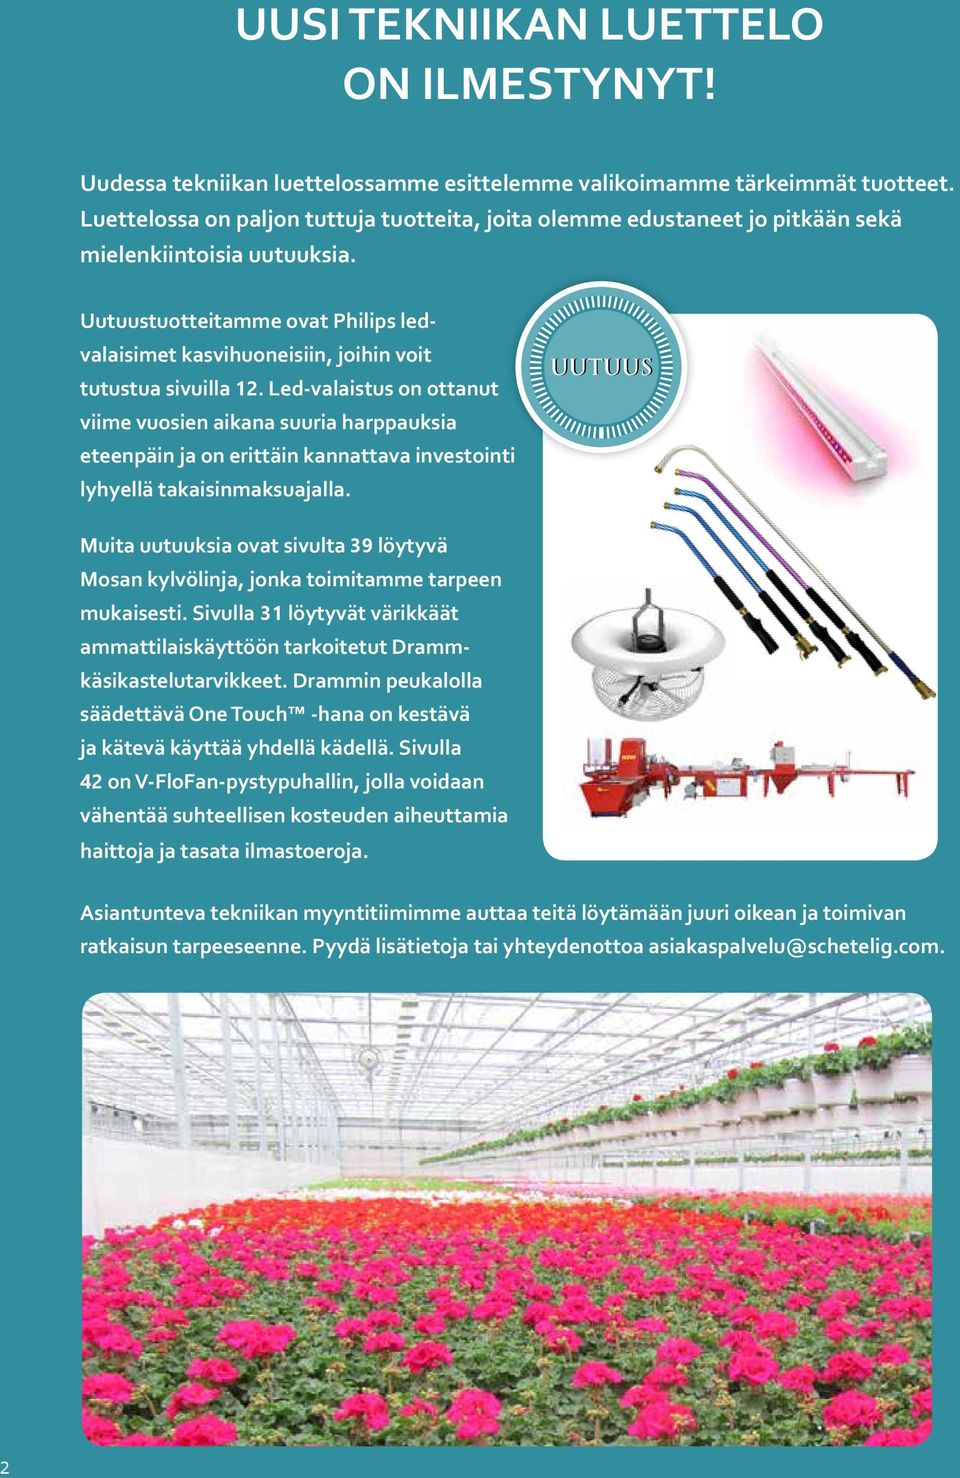 Uutuustuotteitamme ovat Philips ledvalaisimet kasvihuoneisiin, joihin voit tutustua sivuilla 12.